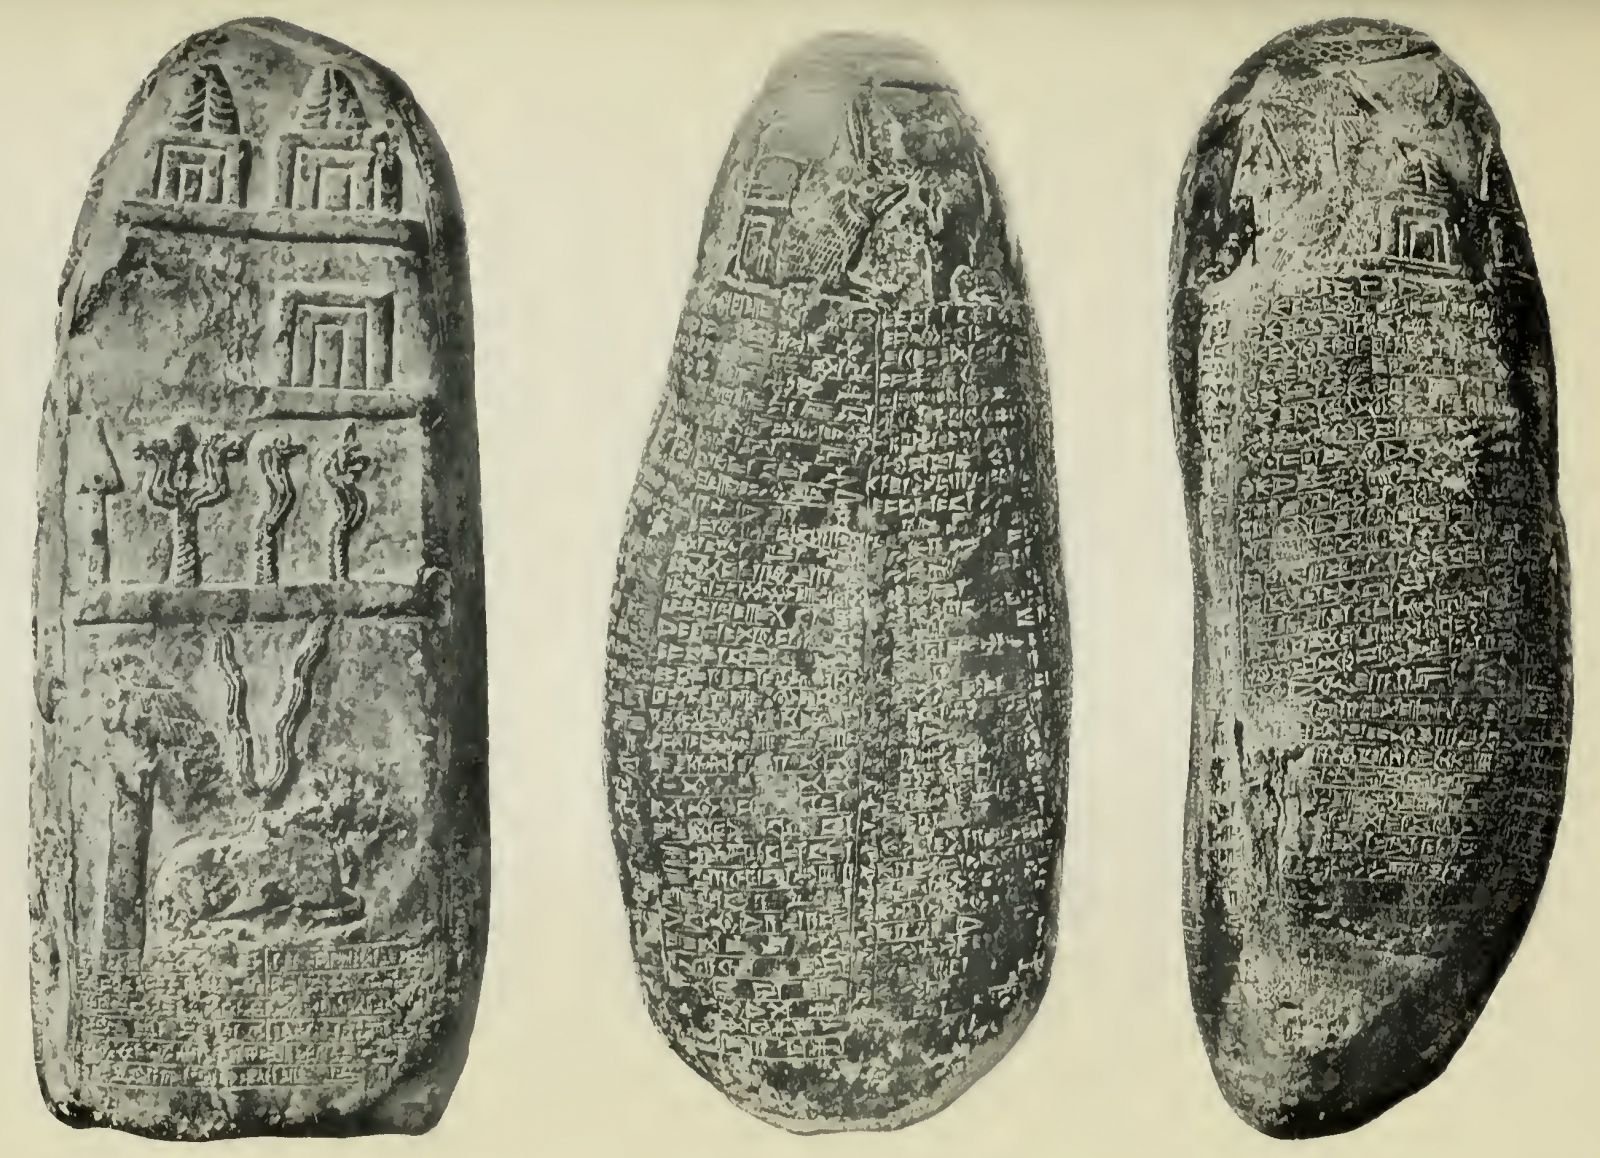 Boundary Stones, showing Symbols of the Gods